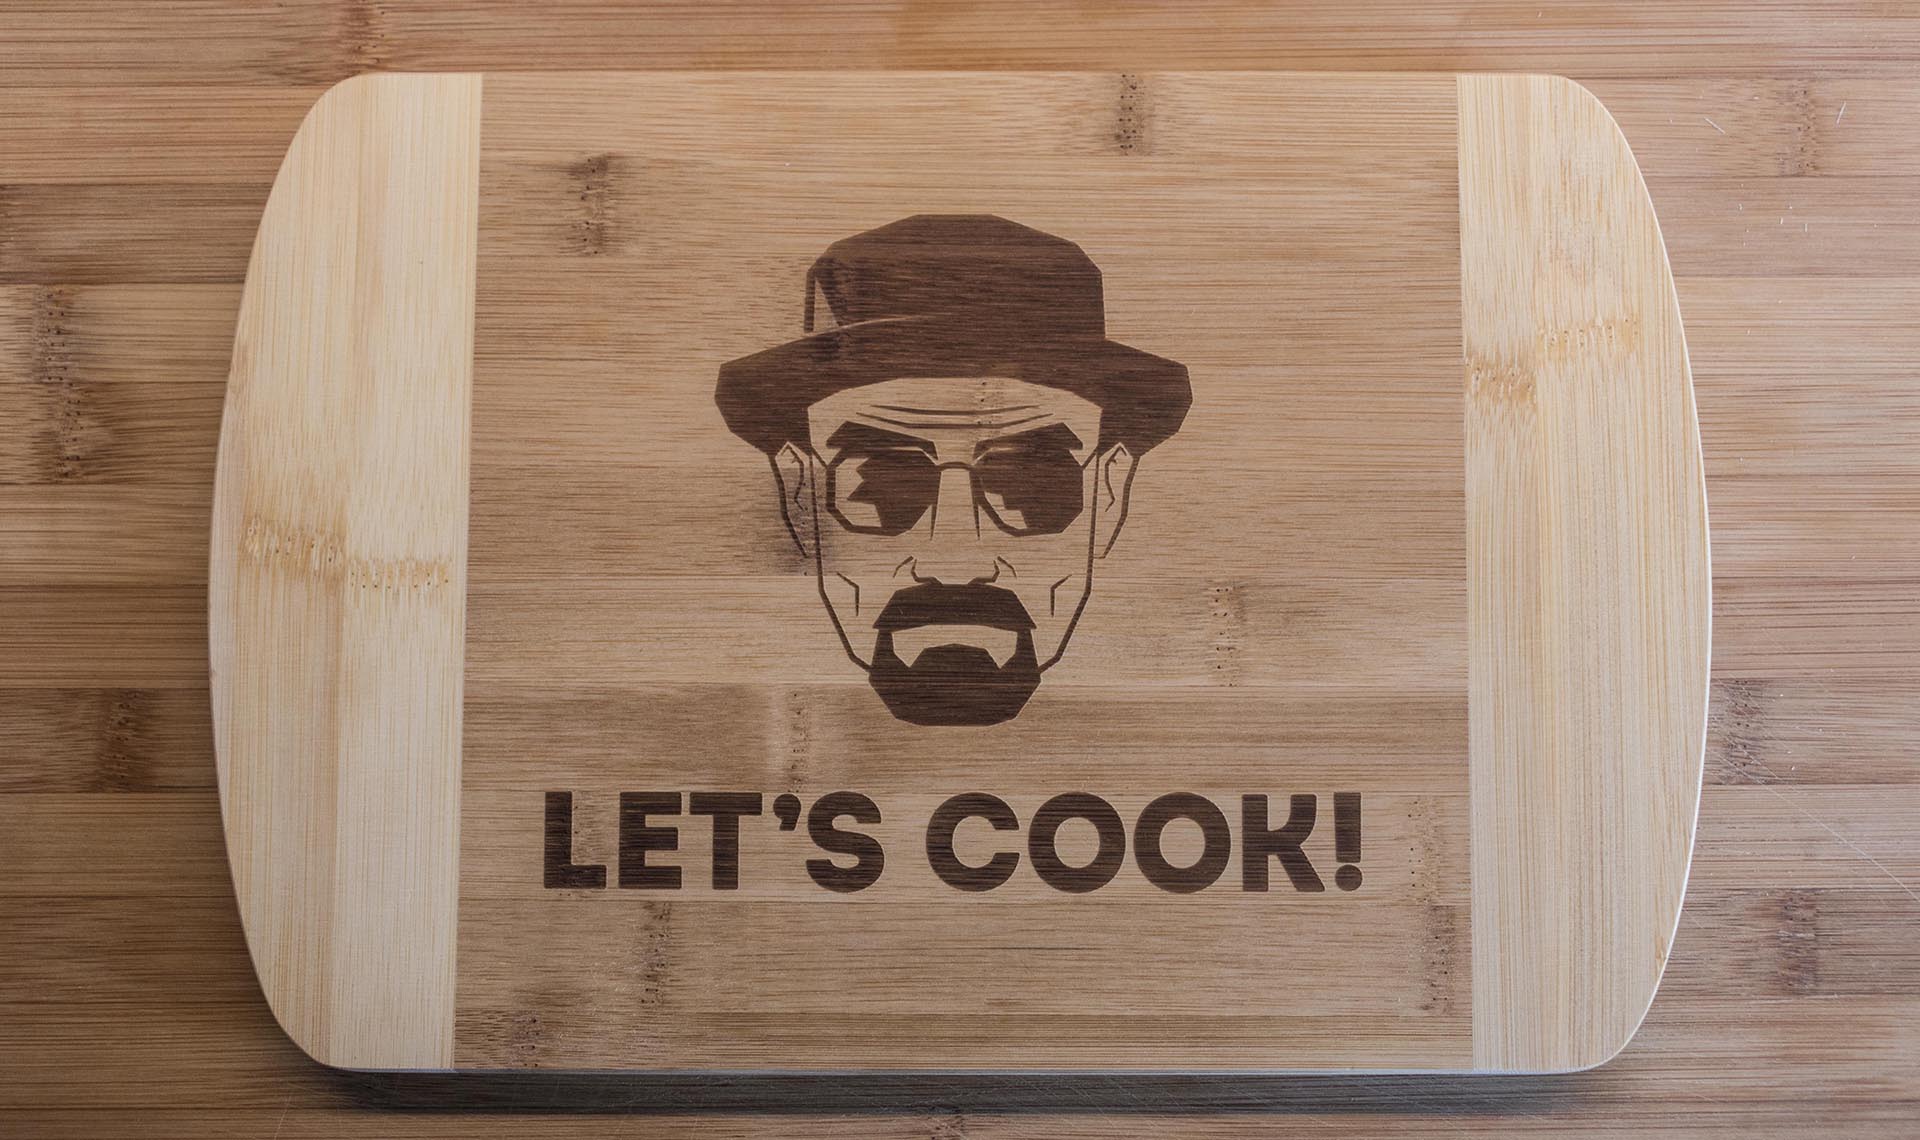 Heisenberg Let's Cook!